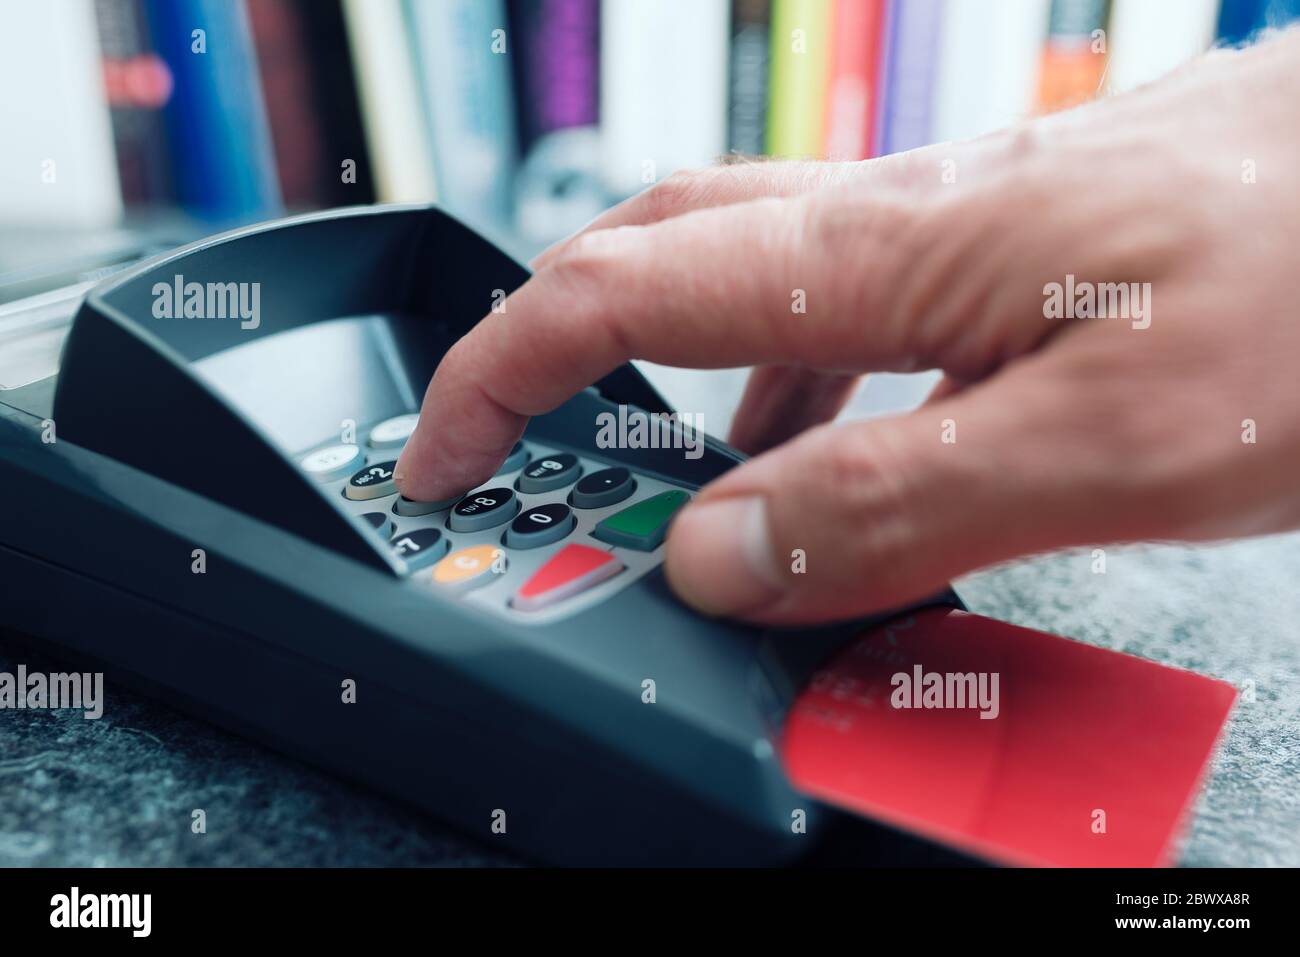 Nahaufnahme der Person, die die PIN-Nummer am POS-Zahlungsterminal für Kreditkarten eingibt Stockfoto